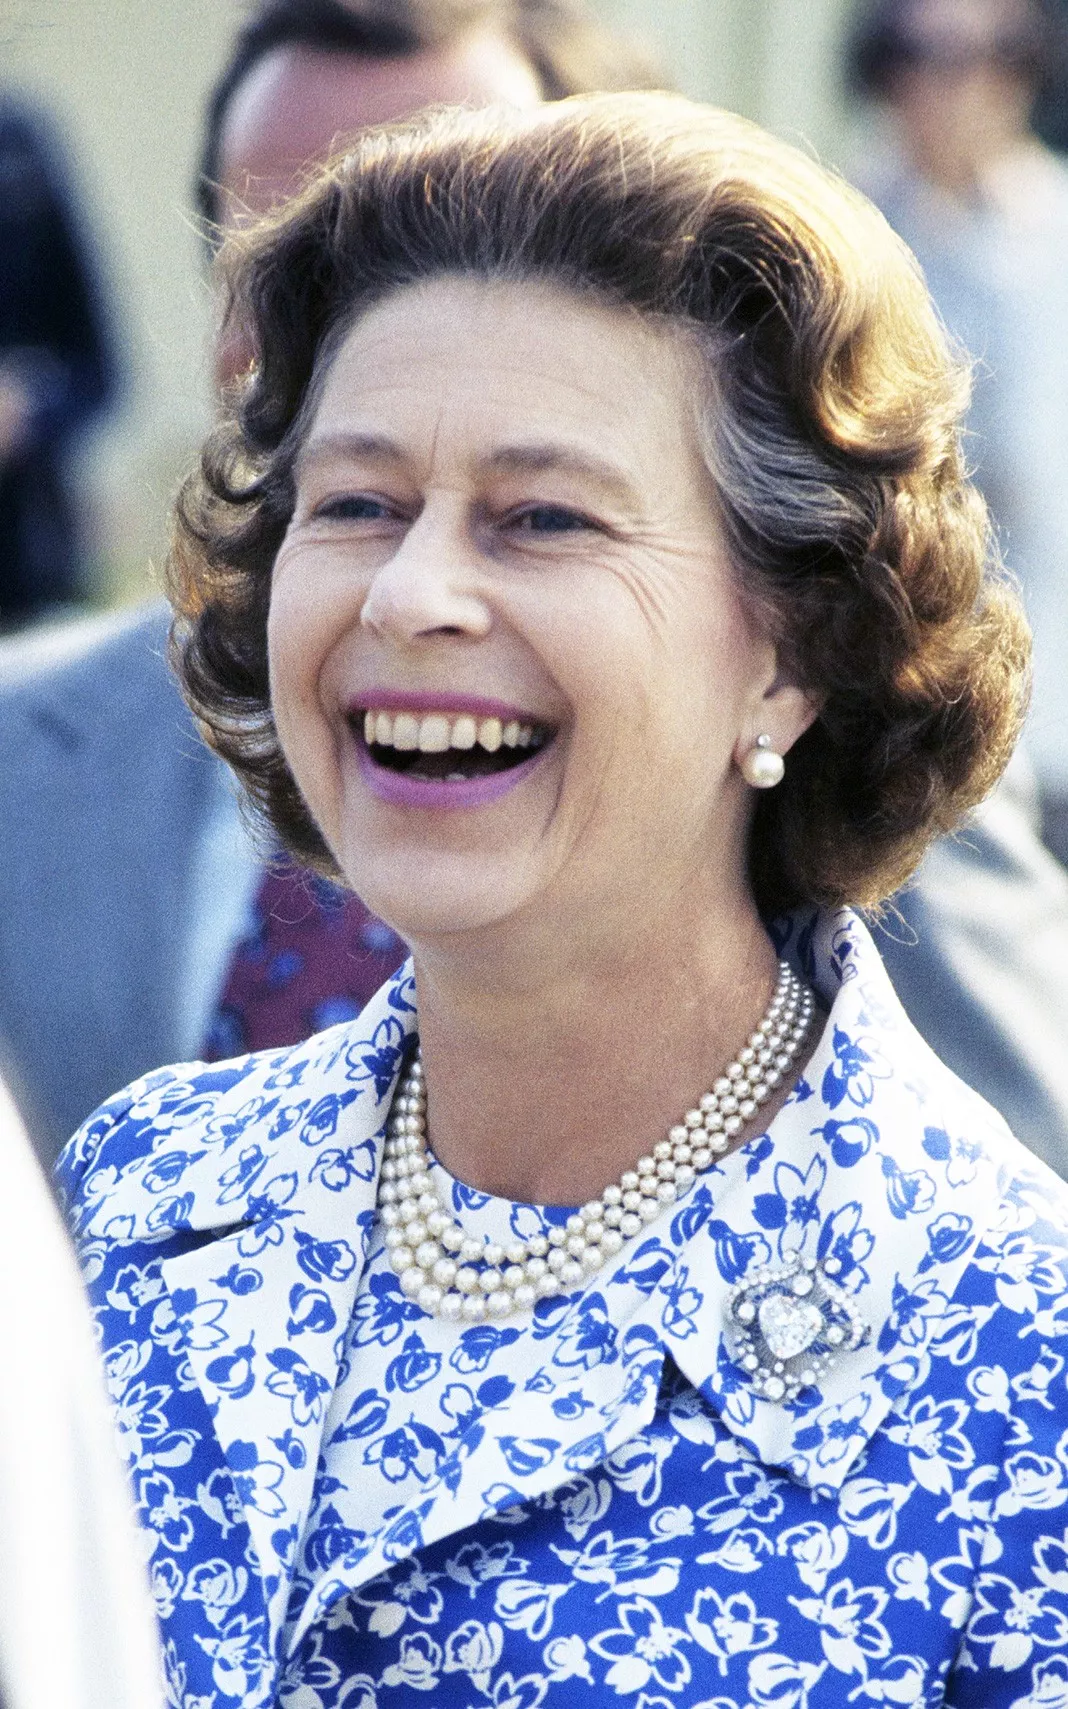 Королева Елизавета II на Виндзорской конной выставке, 14 июля 1976 г.